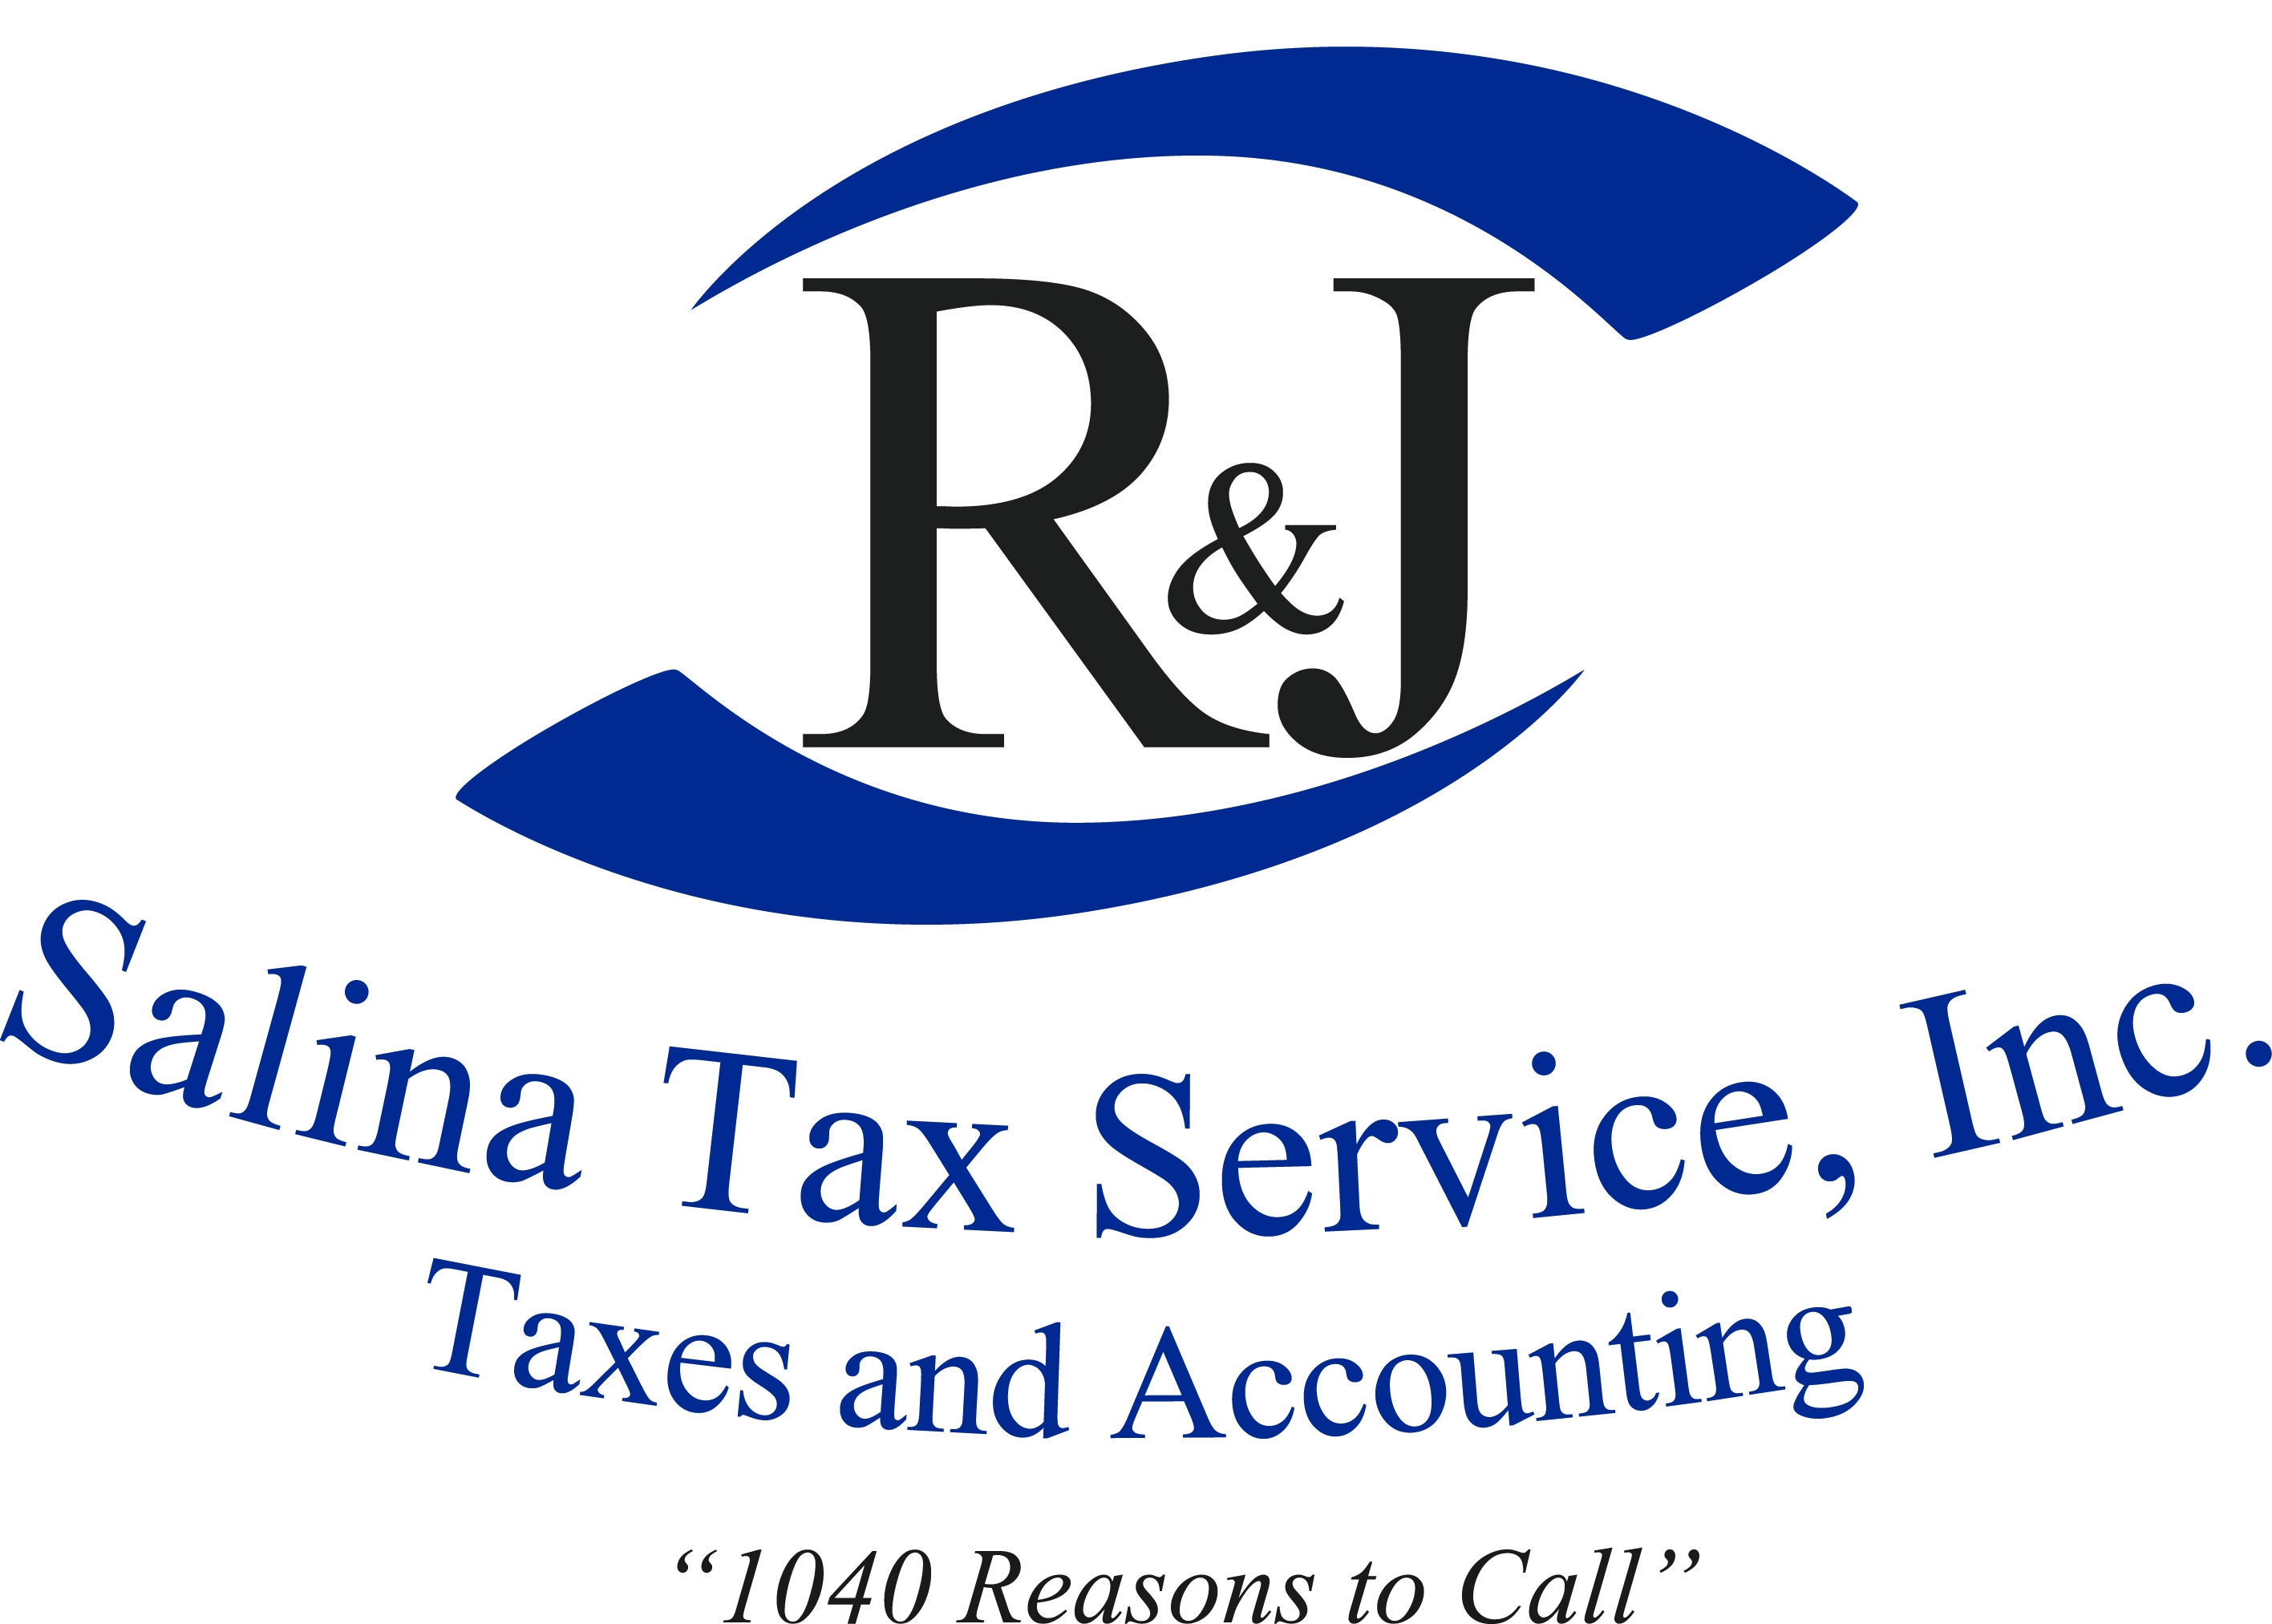 R & J Salina Tax Service, Inc.